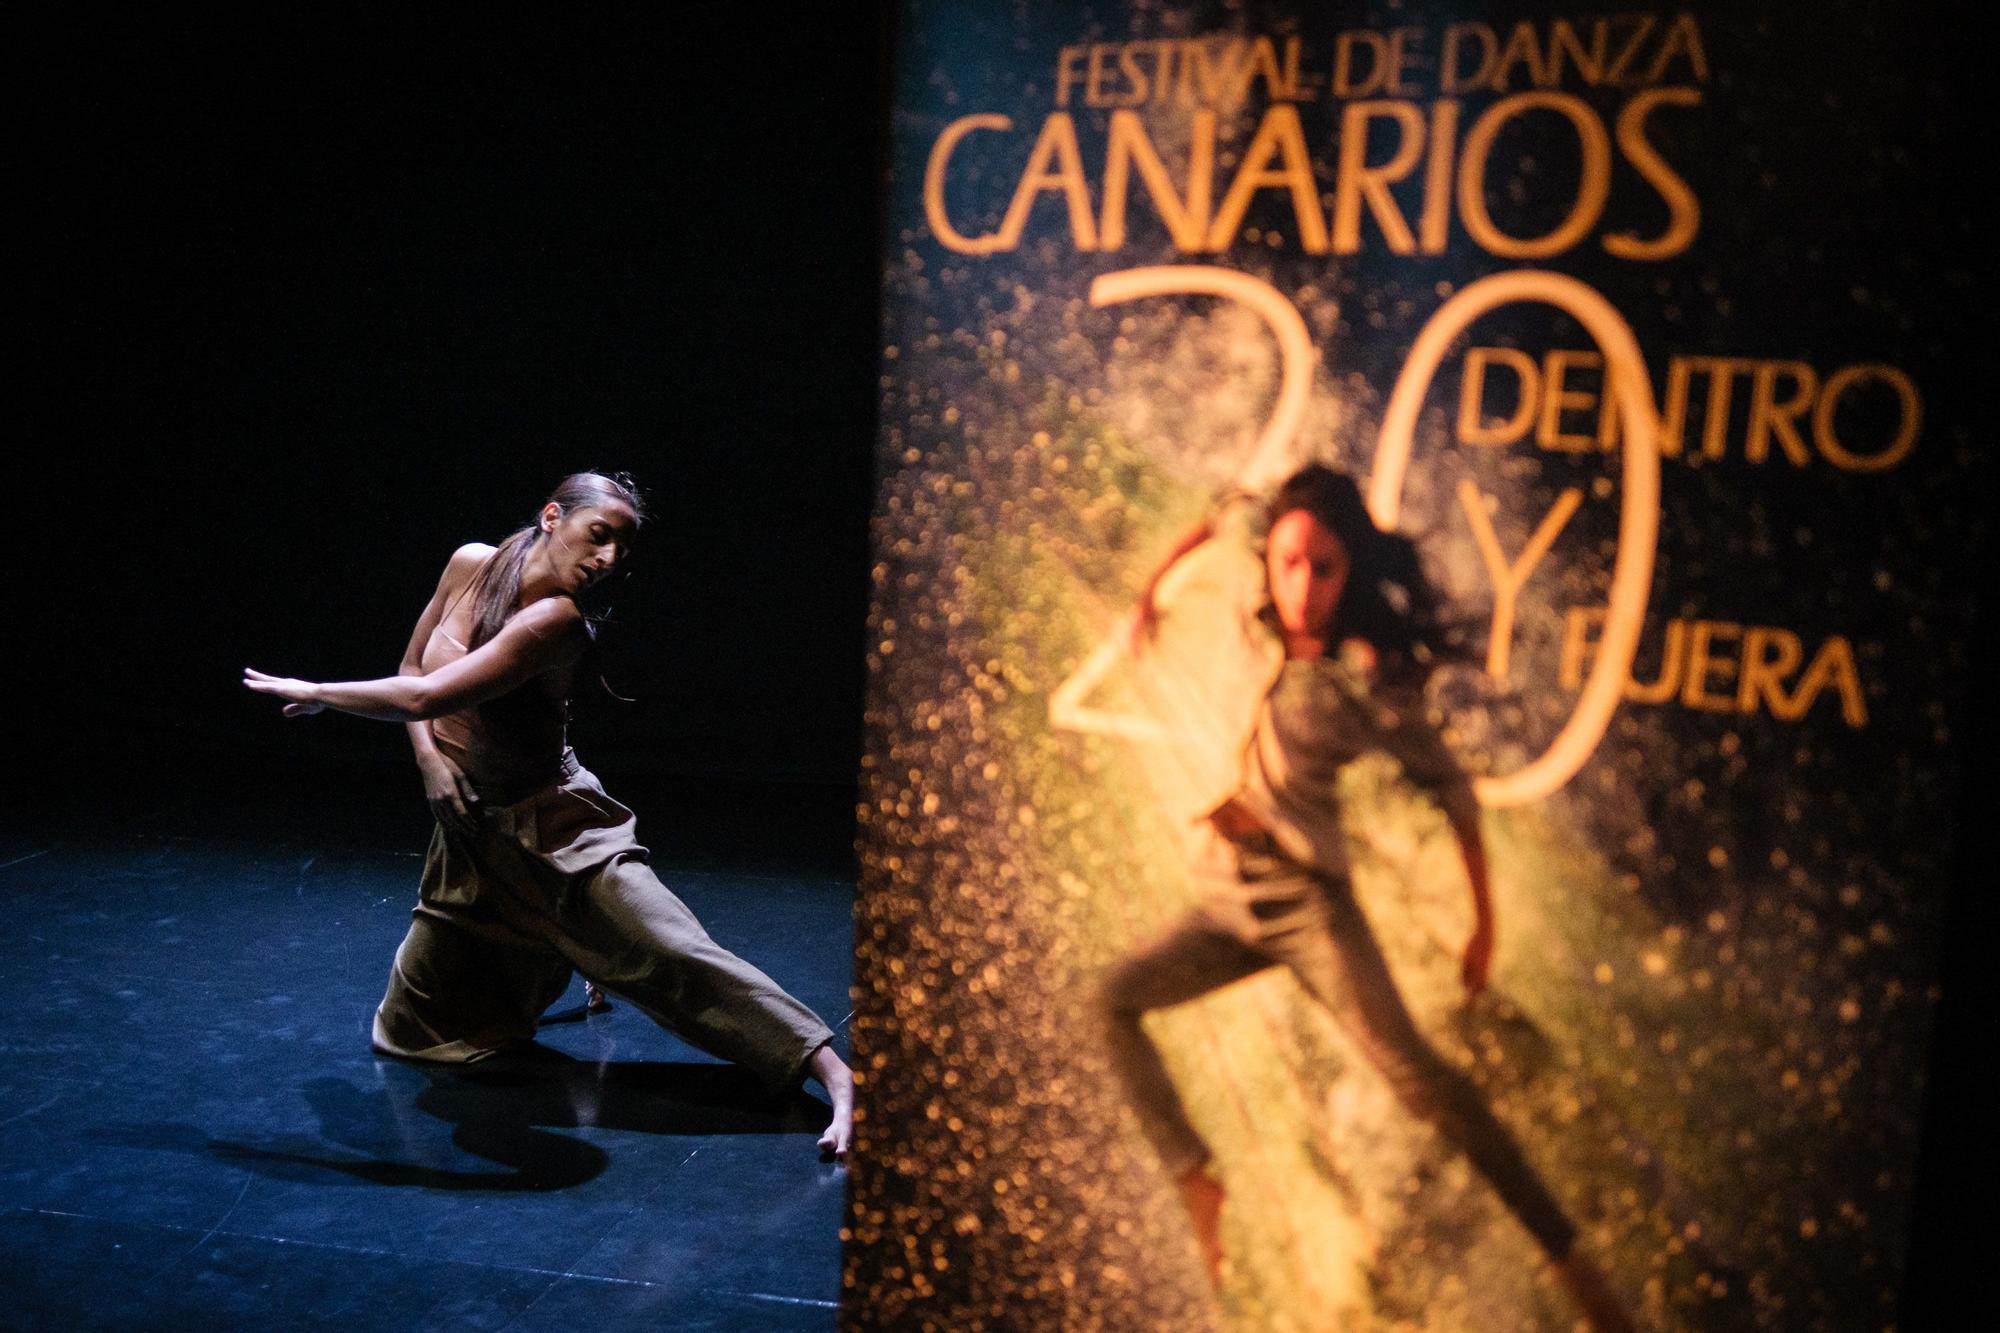 Representación de Emiliana Battitsta para presentar el Festival de Danza Canarios